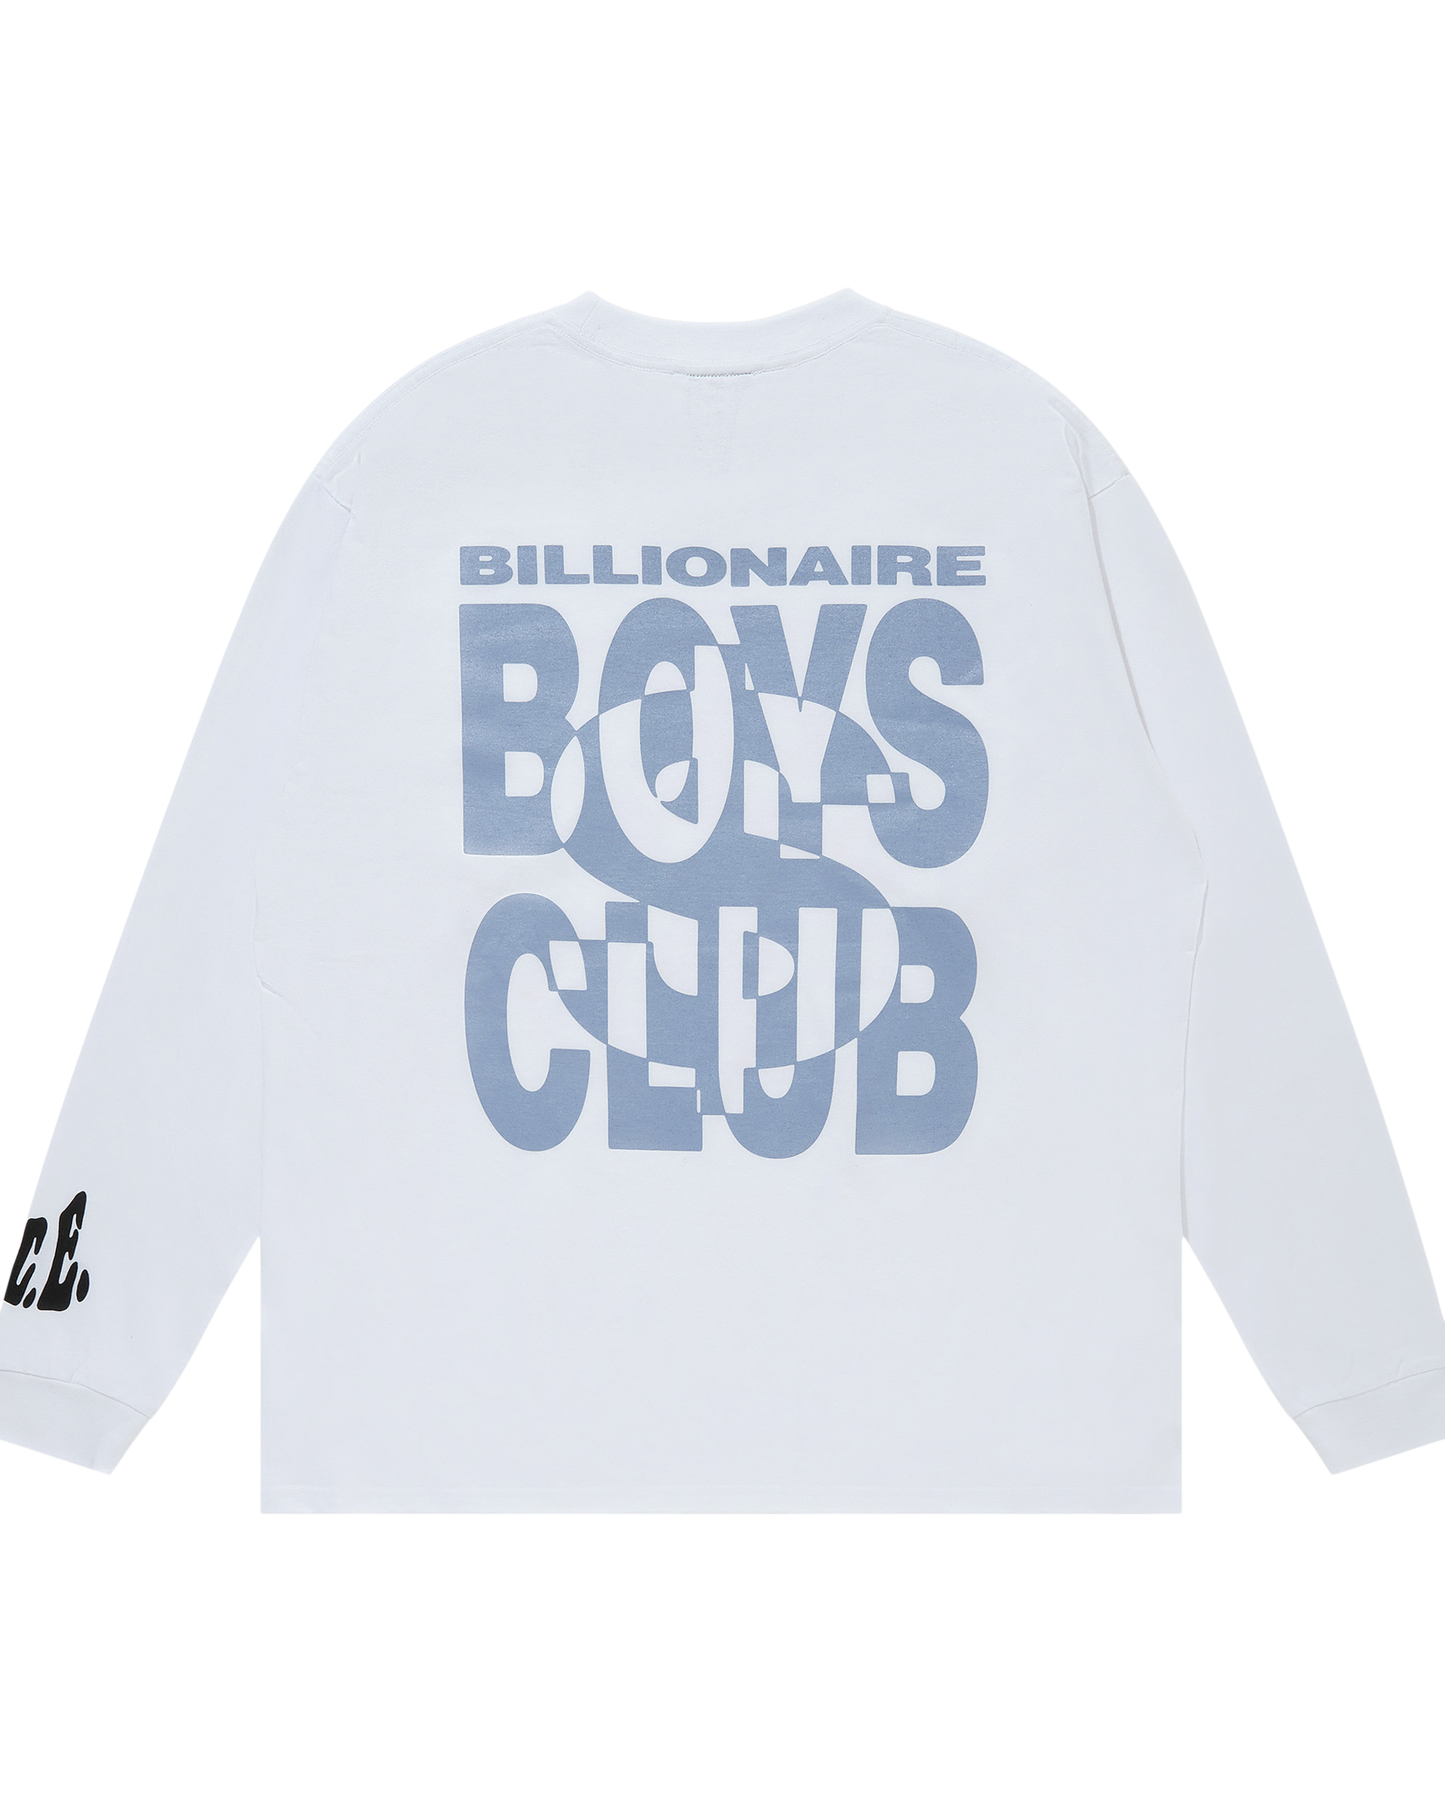 Cotton Long-Sleeve T-Shirt Boys Club